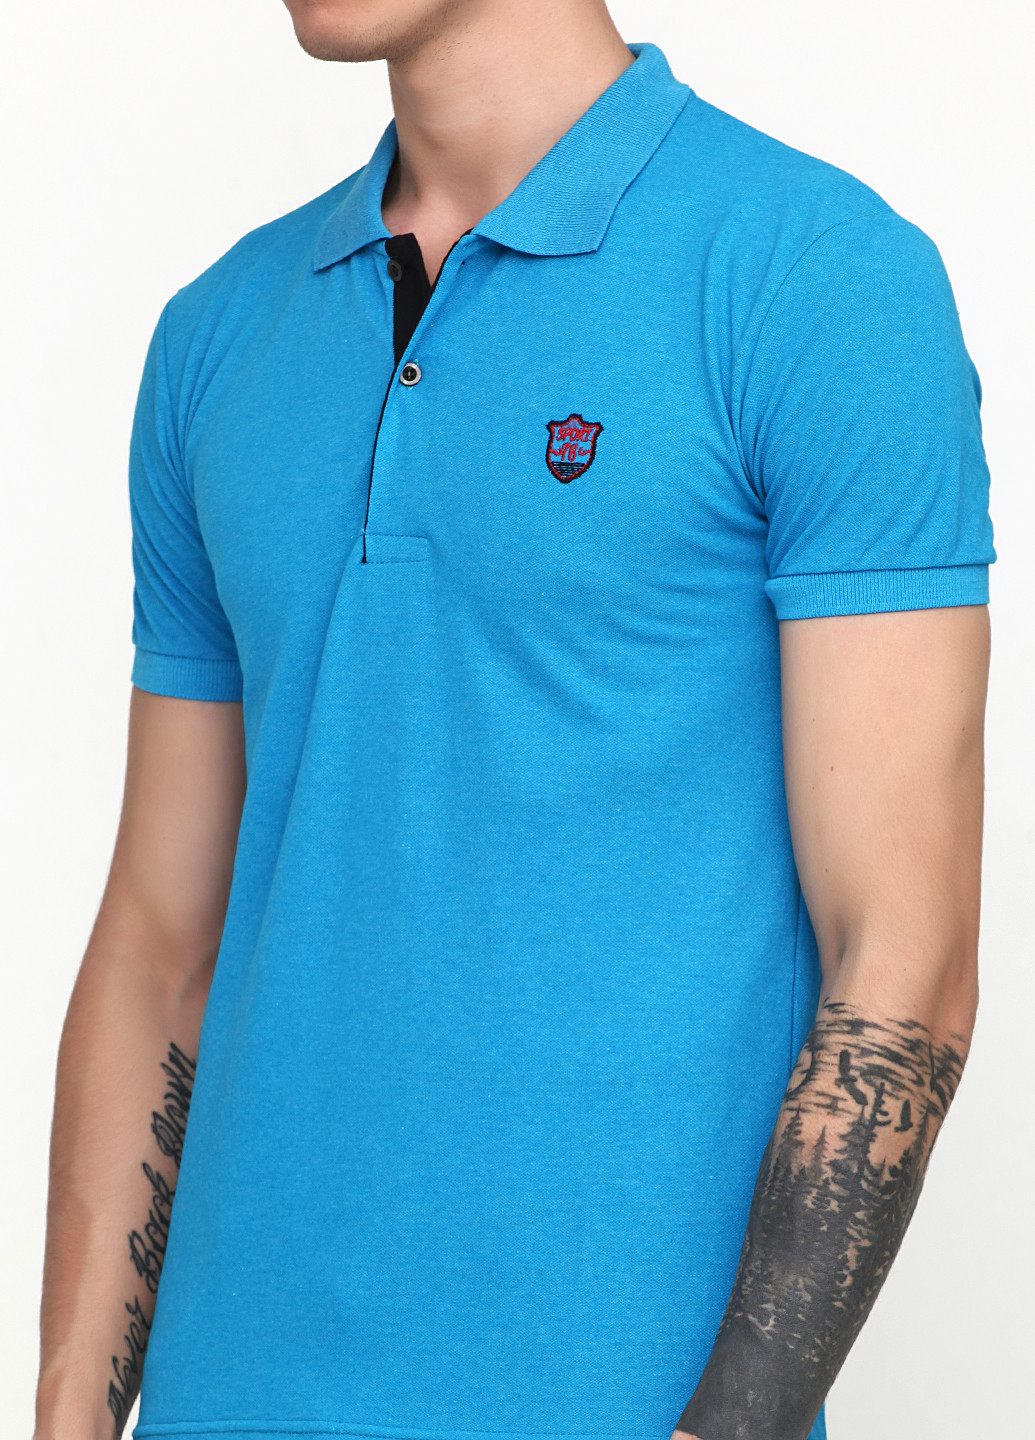 Бирюзовая футболка-поло для мужчин LEXSUS с логотипом